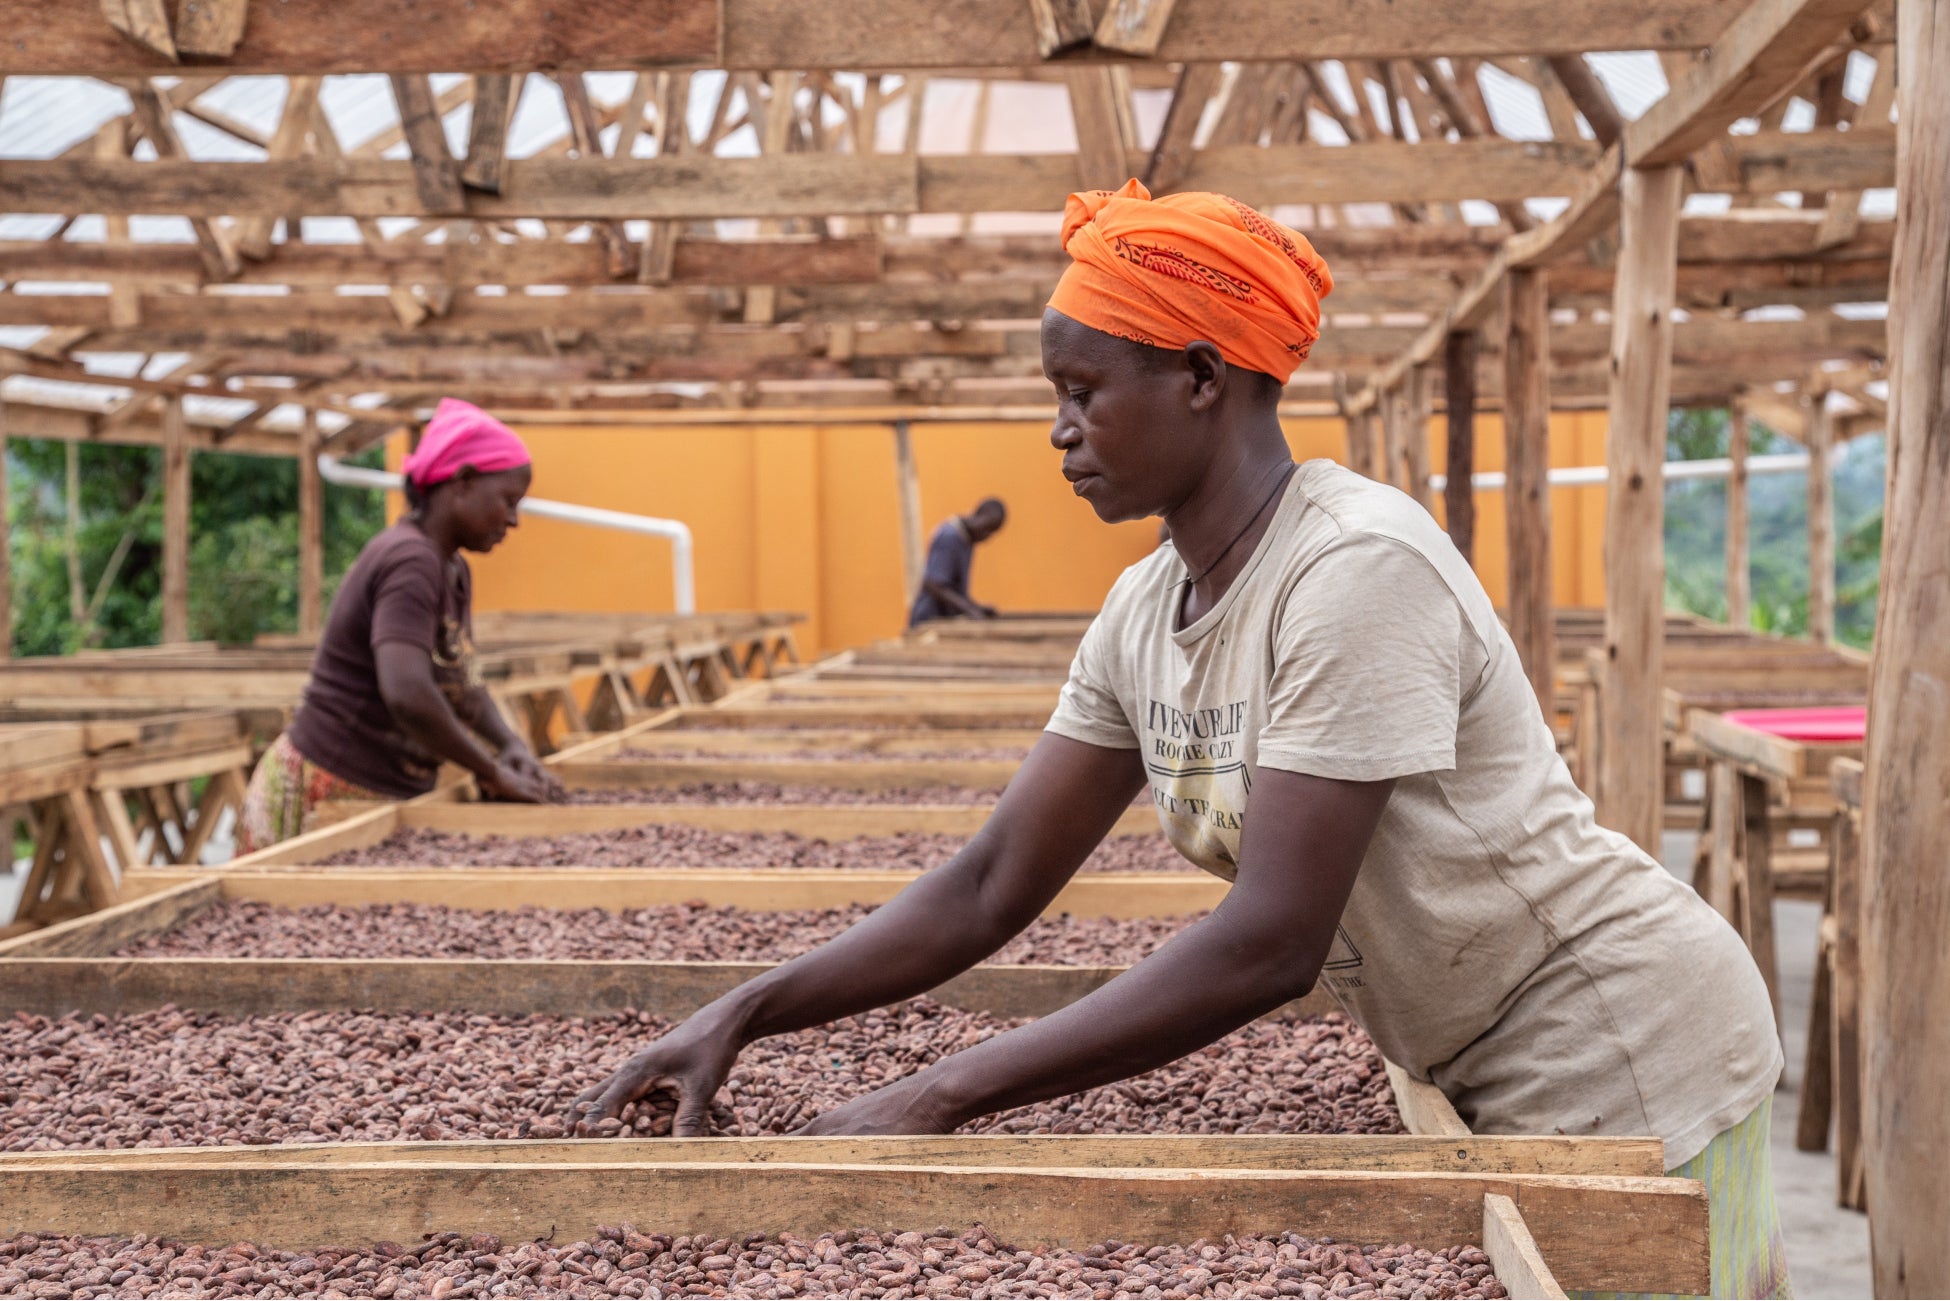 ファーム オブ アフリカは、ウガンダ産の上質なカカオを世界へ届けるために、チョコレートの祭典「サロン・デュ・ショコラ・パリ 2022」に立花商店と共同出展のサブ画像4